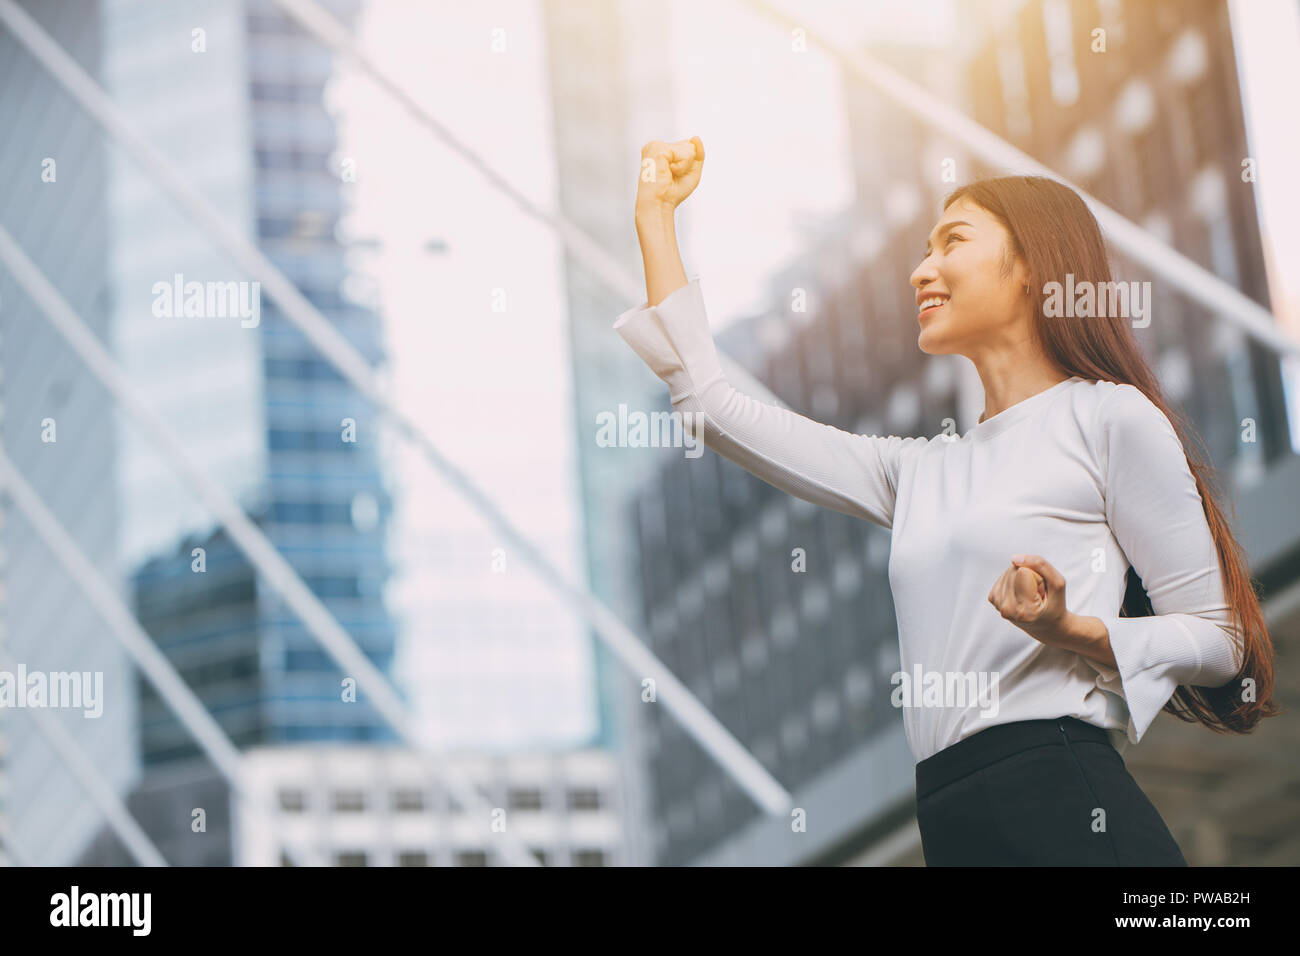 Gewinner erfolgreiche Mitarbeiter Mädchen erheben sich Faust Hand mit Stadt Bürogebäude Hintergrund Stockfoto